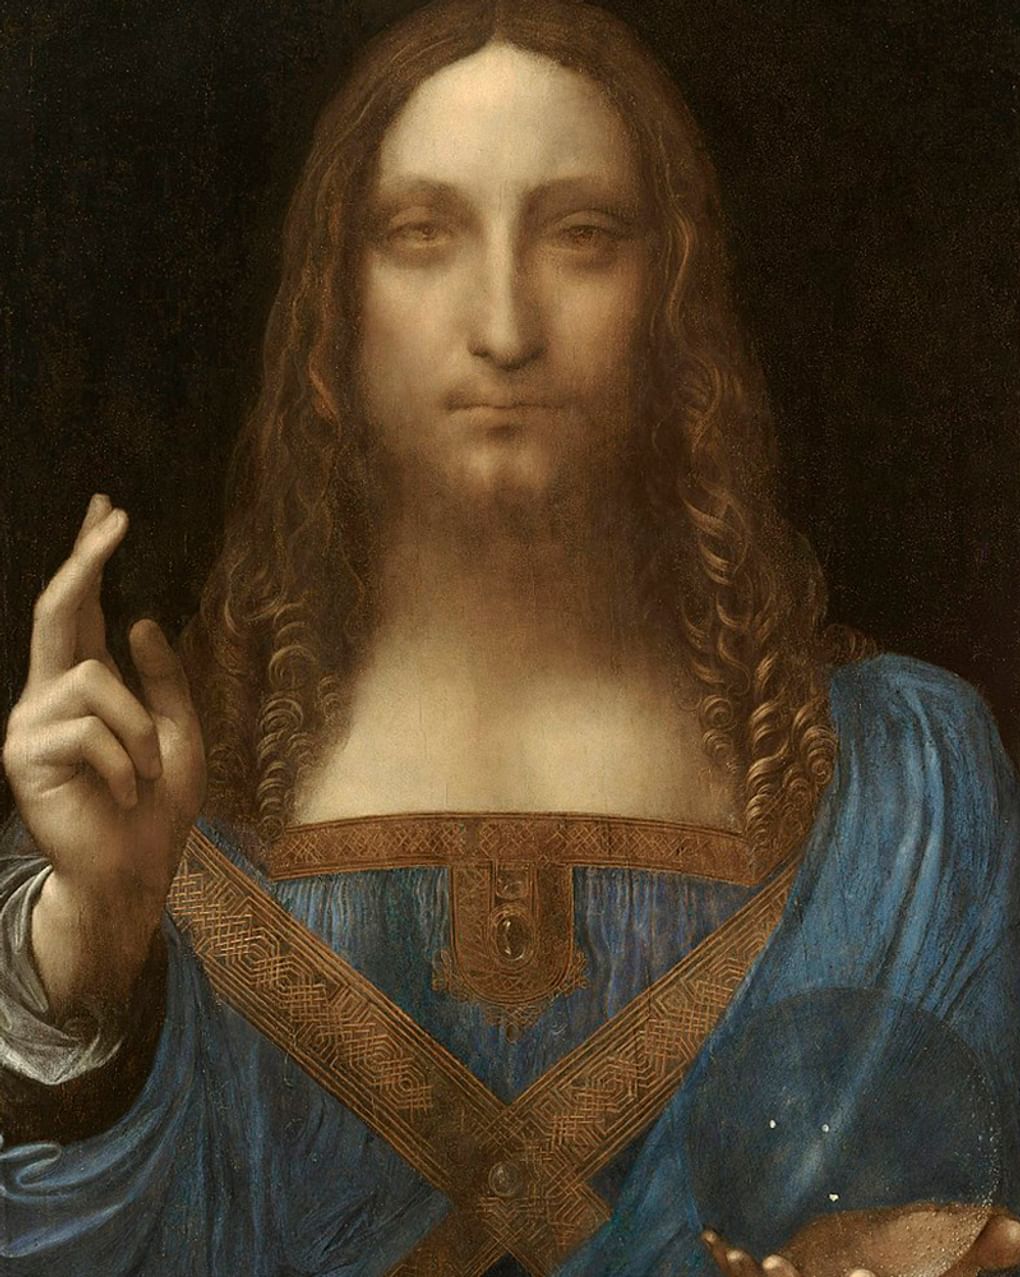 Леонардо да Винчи (?). Спаситель мира (фрагмент). Около 1499. Частное собрание